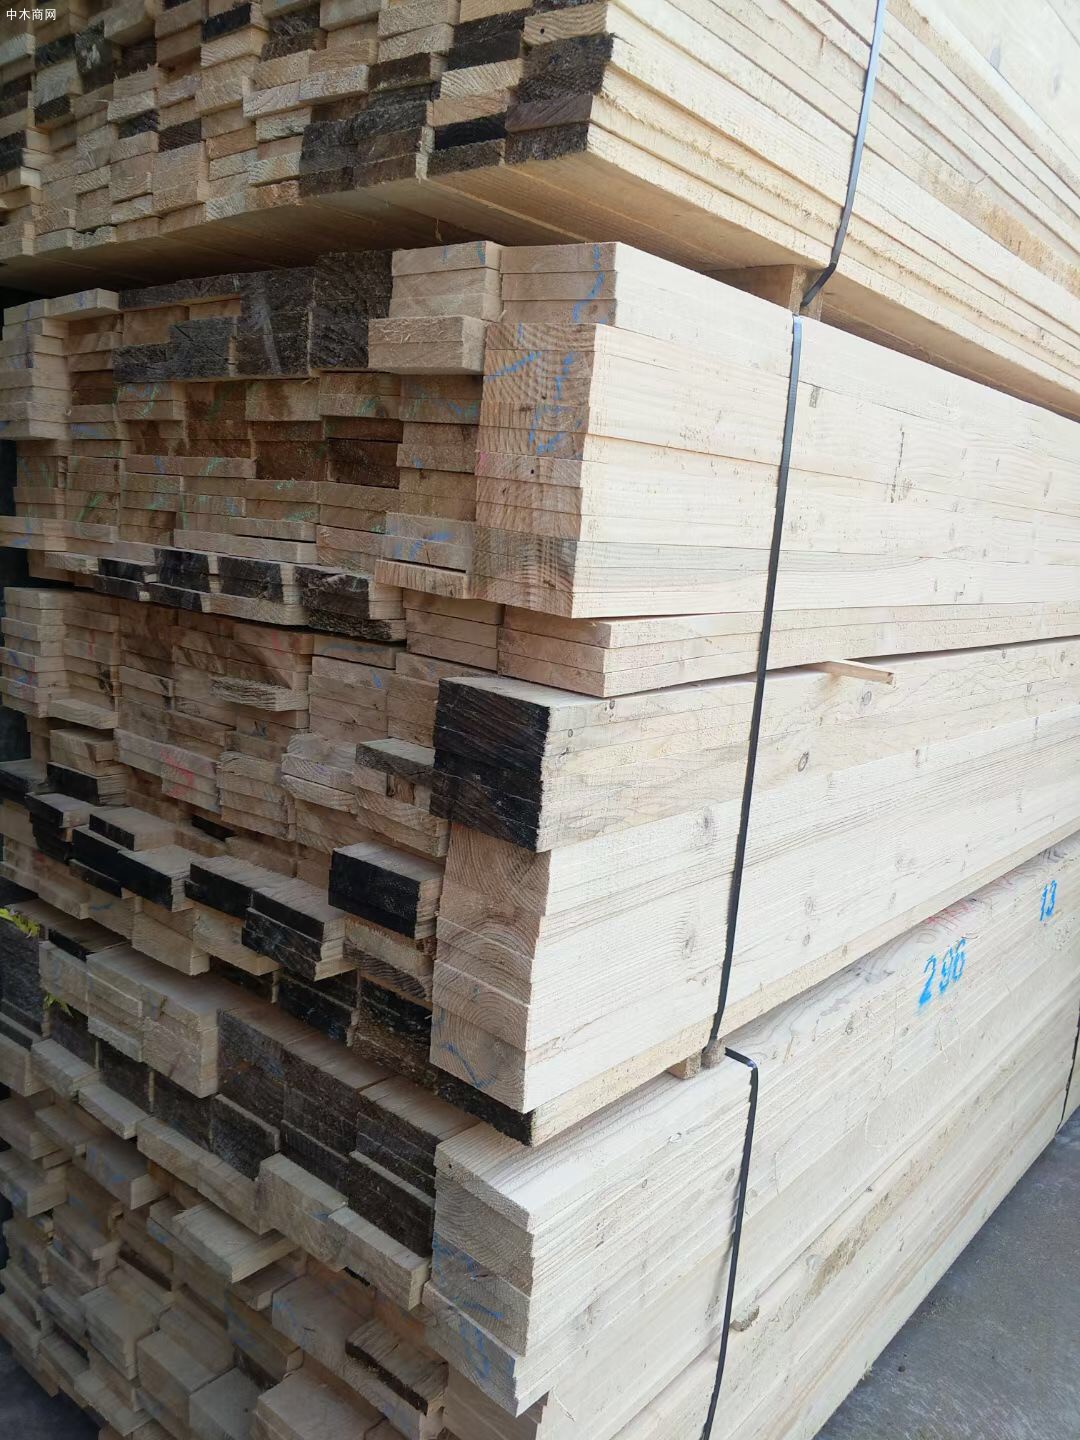 太仓创秋木业自动化生产薄板,包装料,托盘料品质一流